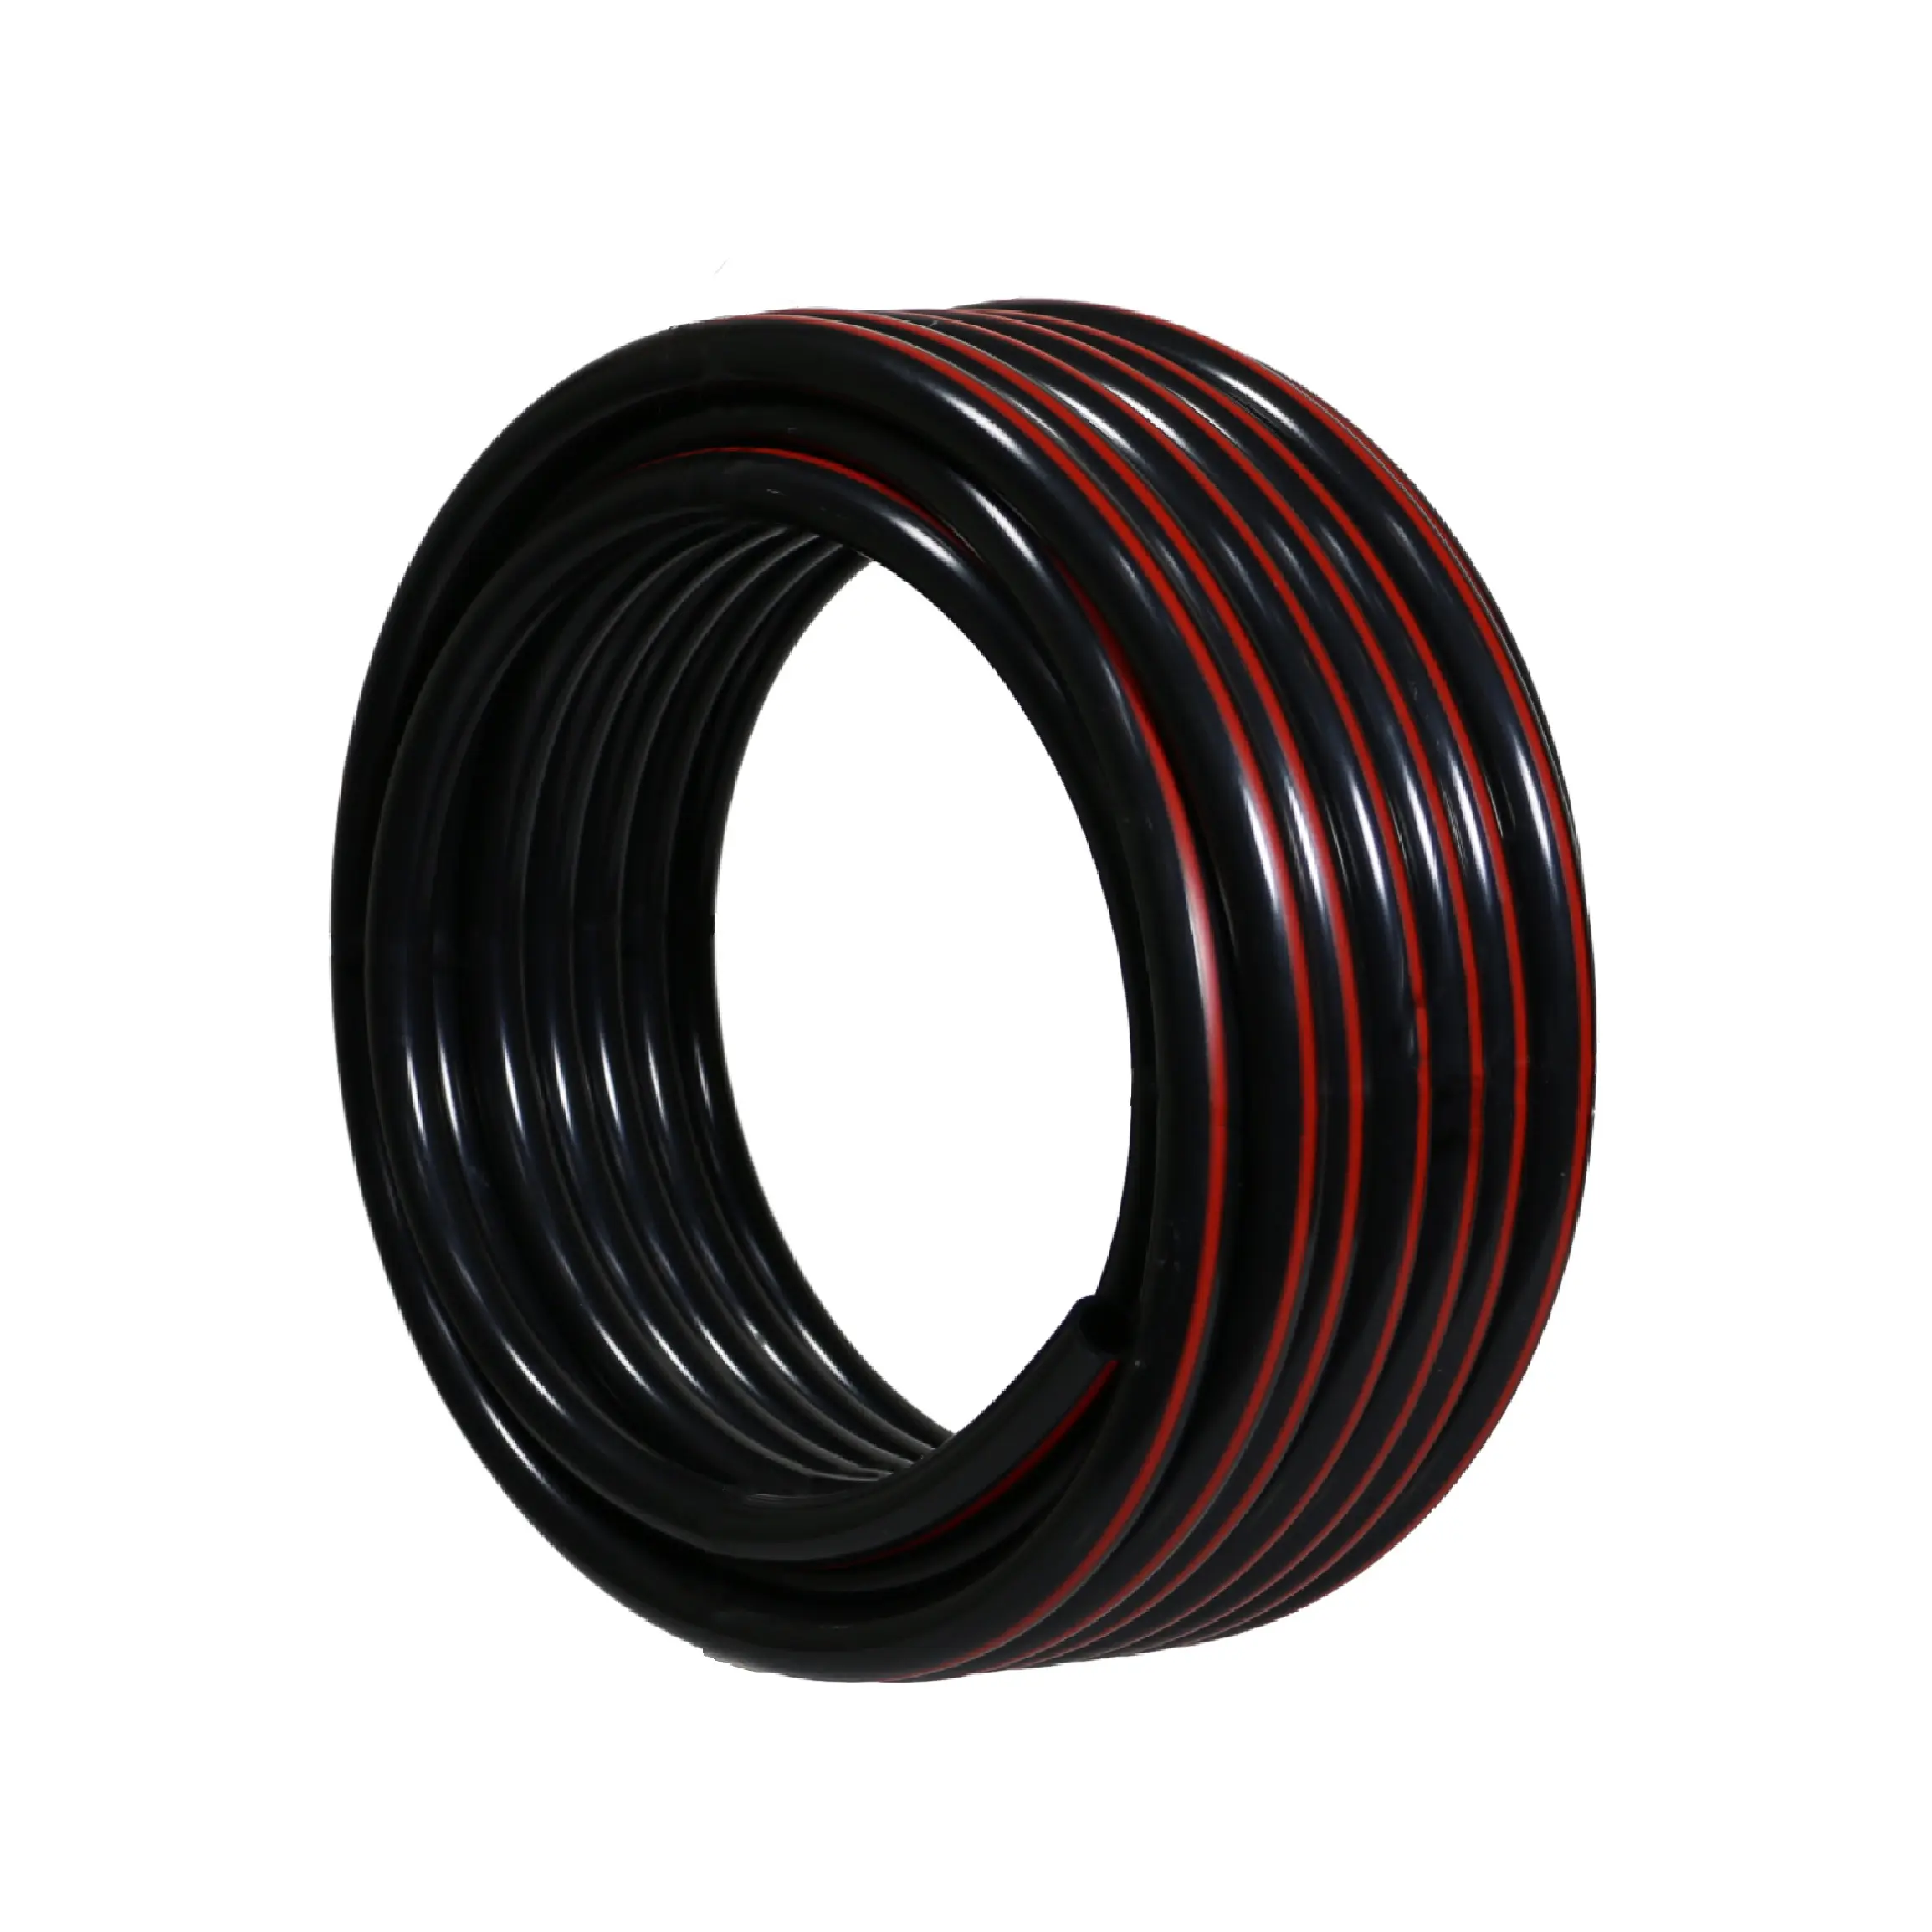 Tubo neumático de poliamida de plástico tubo de nailon negro blanco Flexible Pa6 Pa12 OD 4mm, 6mm, 8mm,10mm,12mm tubo neumático de manguera